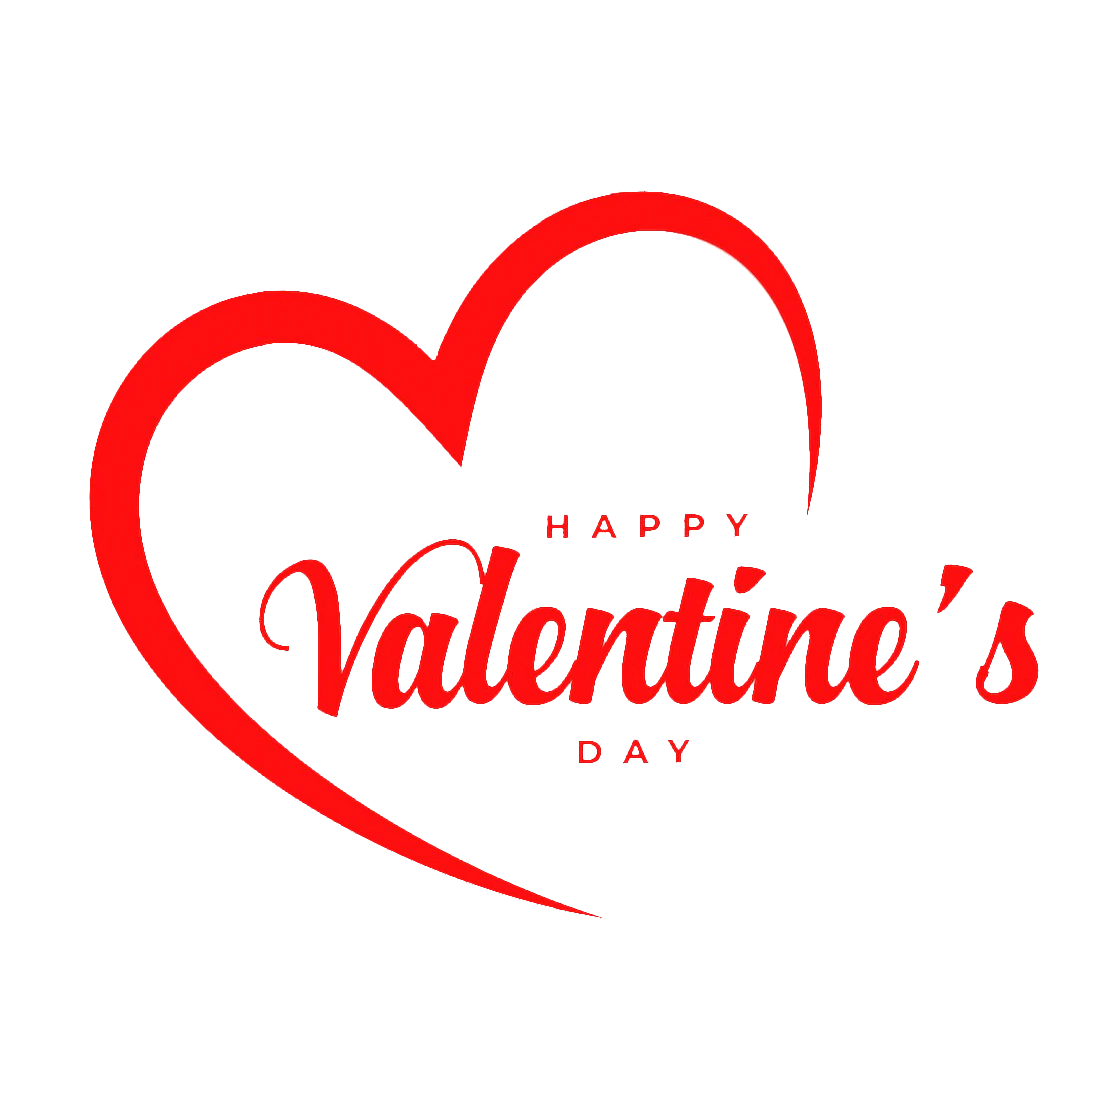 Valentines heart 2023, valentine day heart 2023, happy valentine day typography with heart, valentines day background, valentine day red text